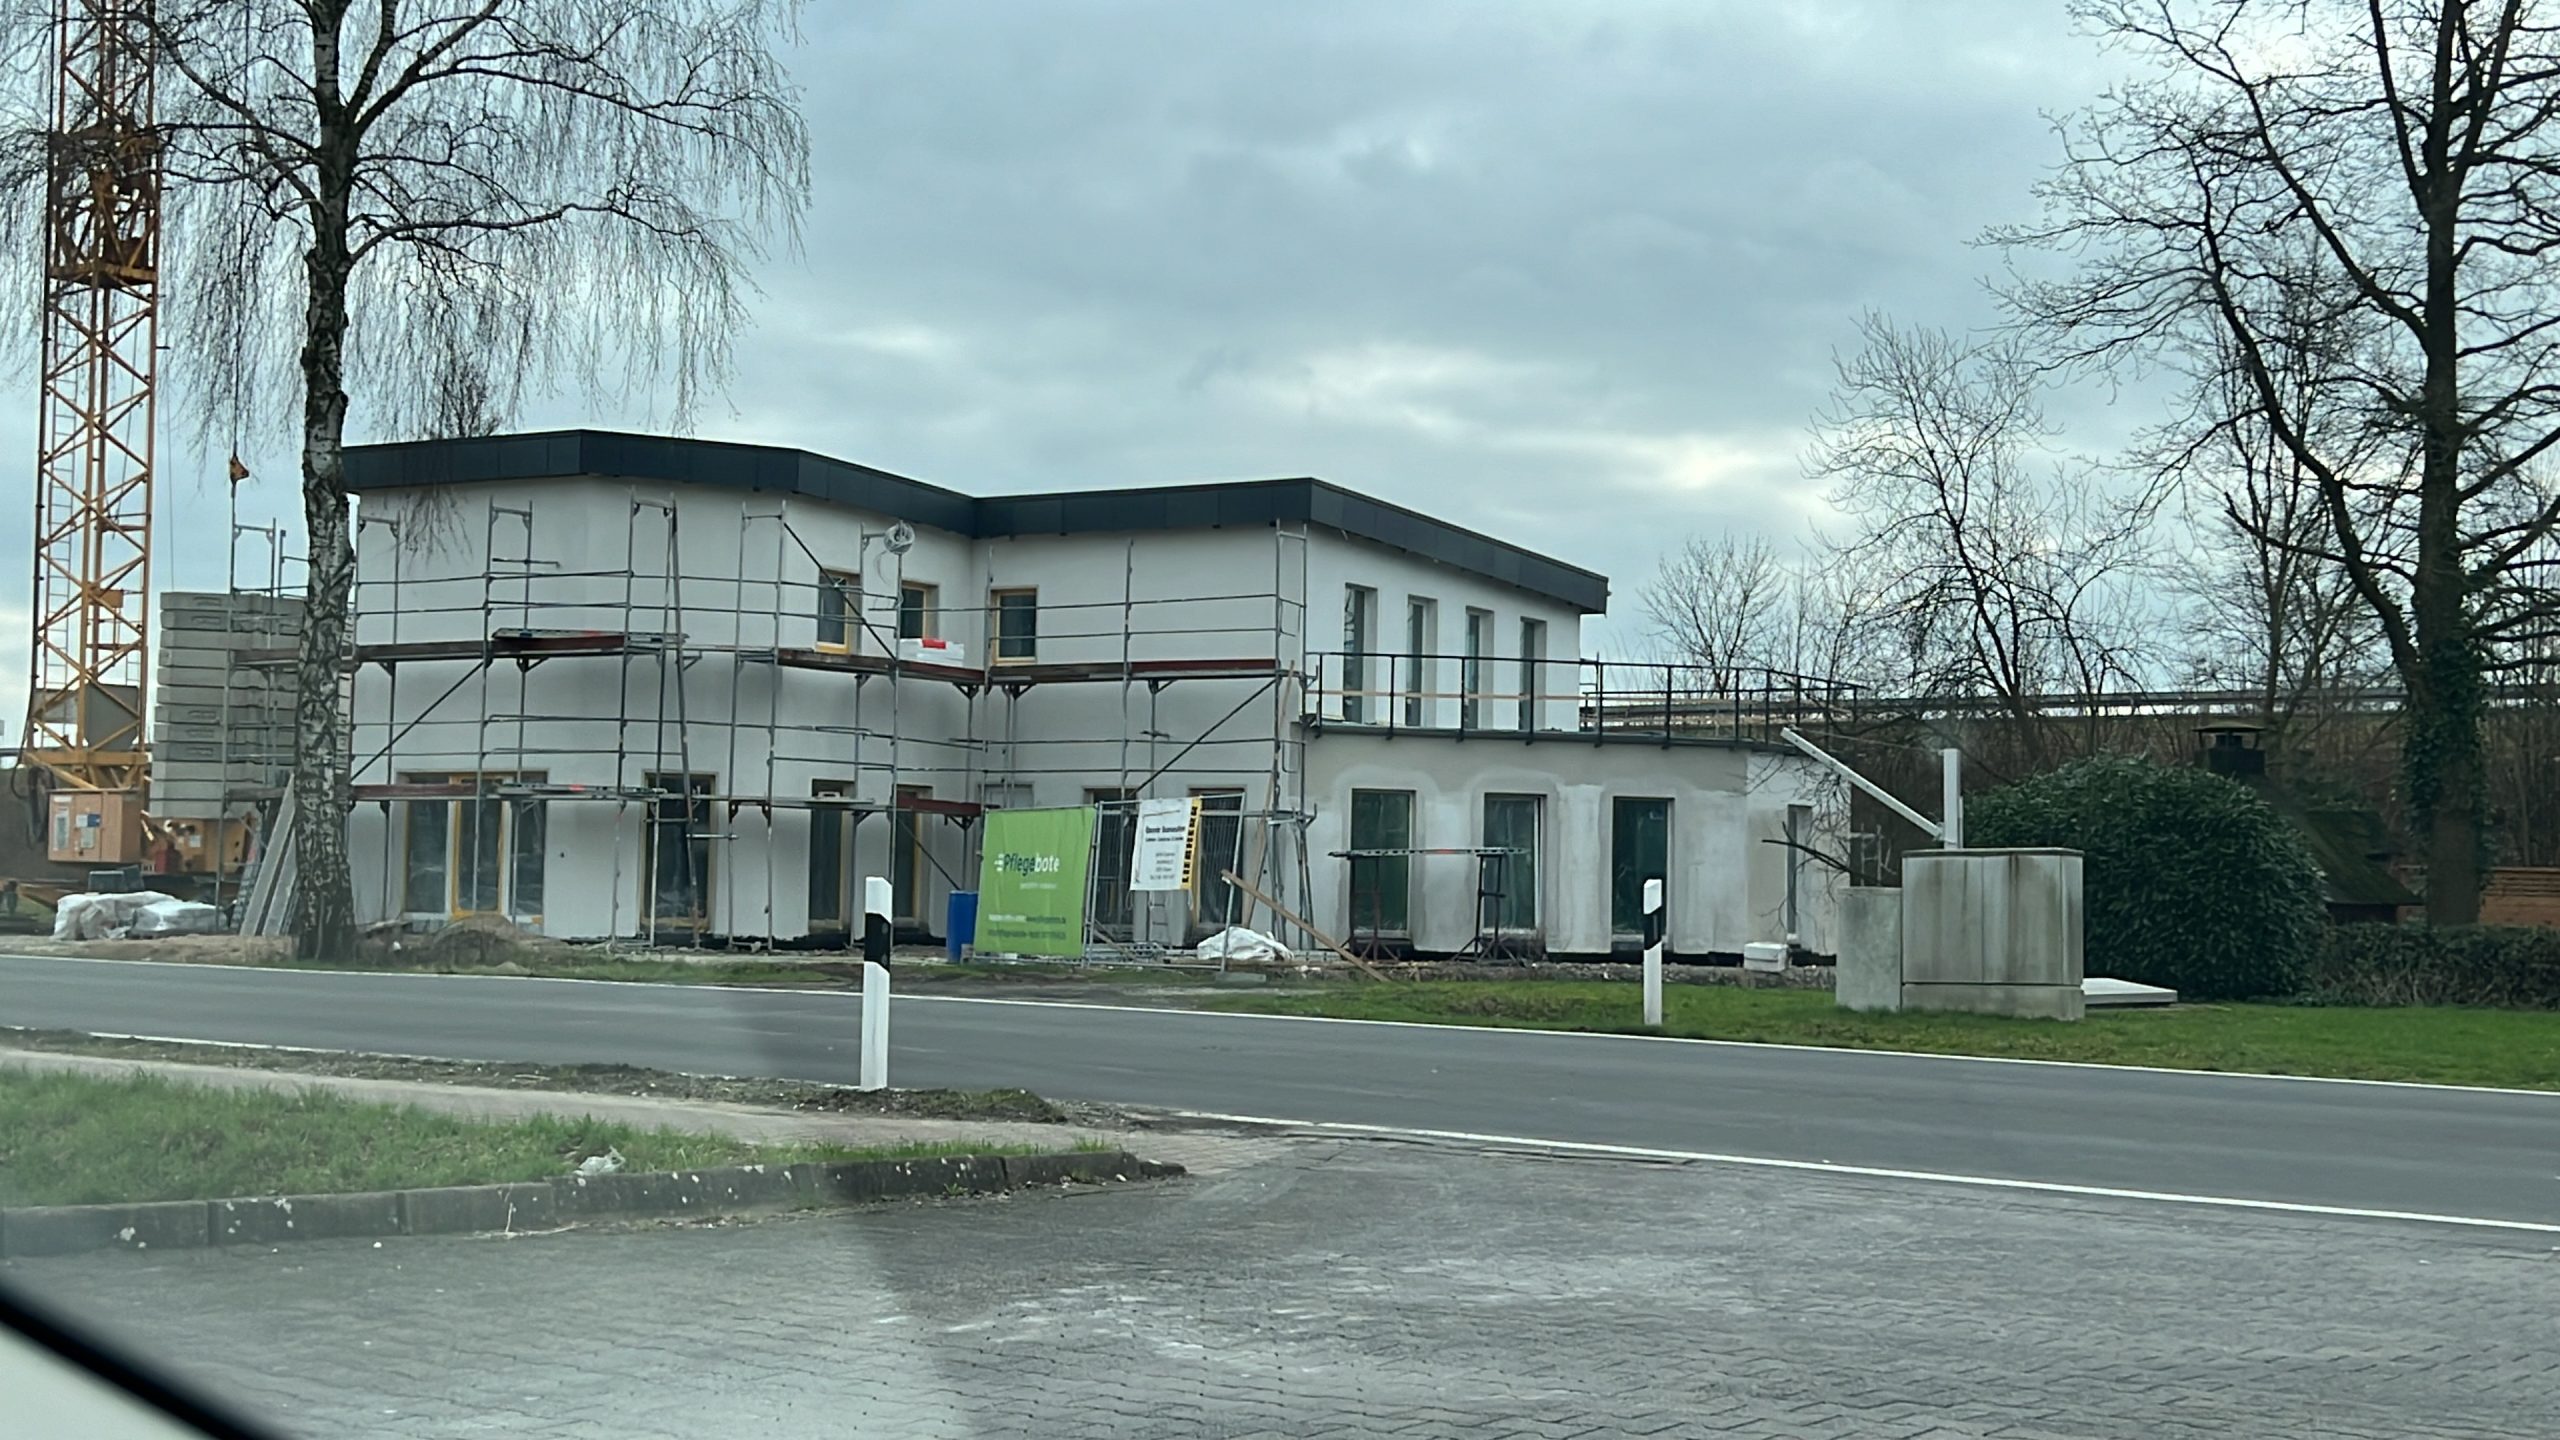 Büro-Neubau in Bad Rothenfelde beginnt